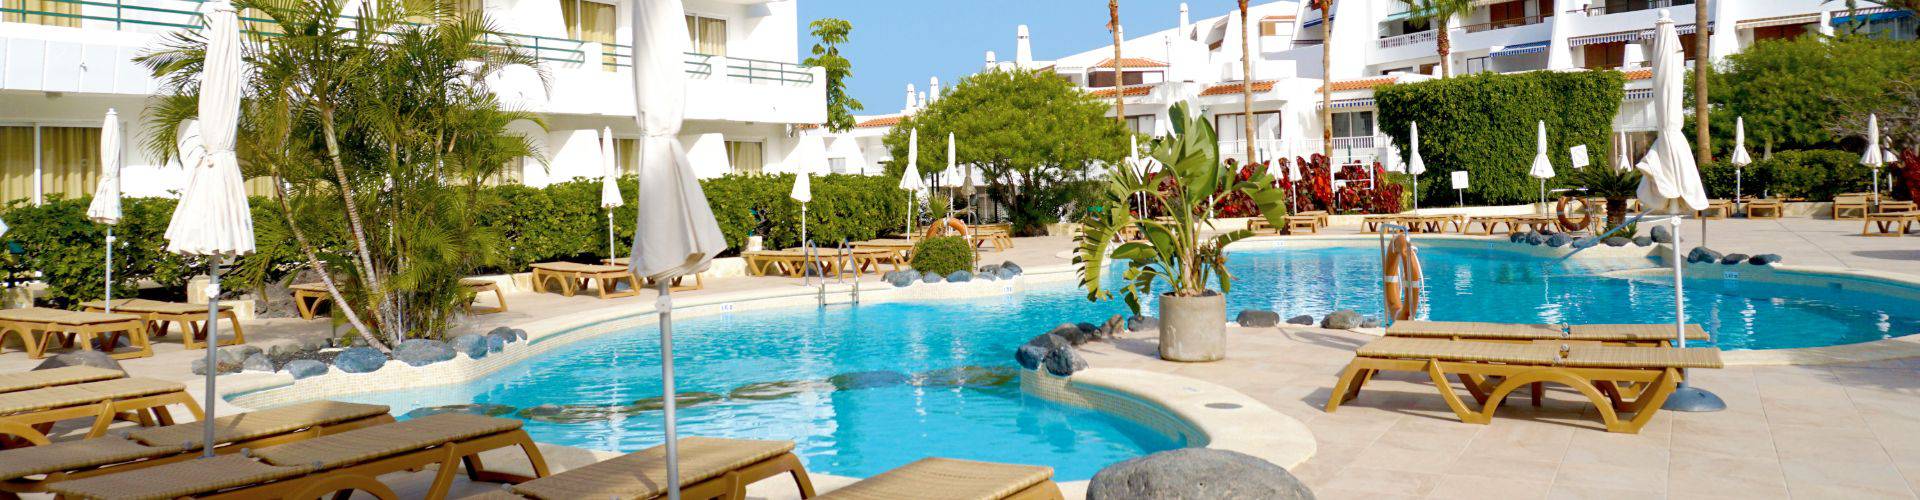 Hovima Hotels 2 - Costa Adeje - 